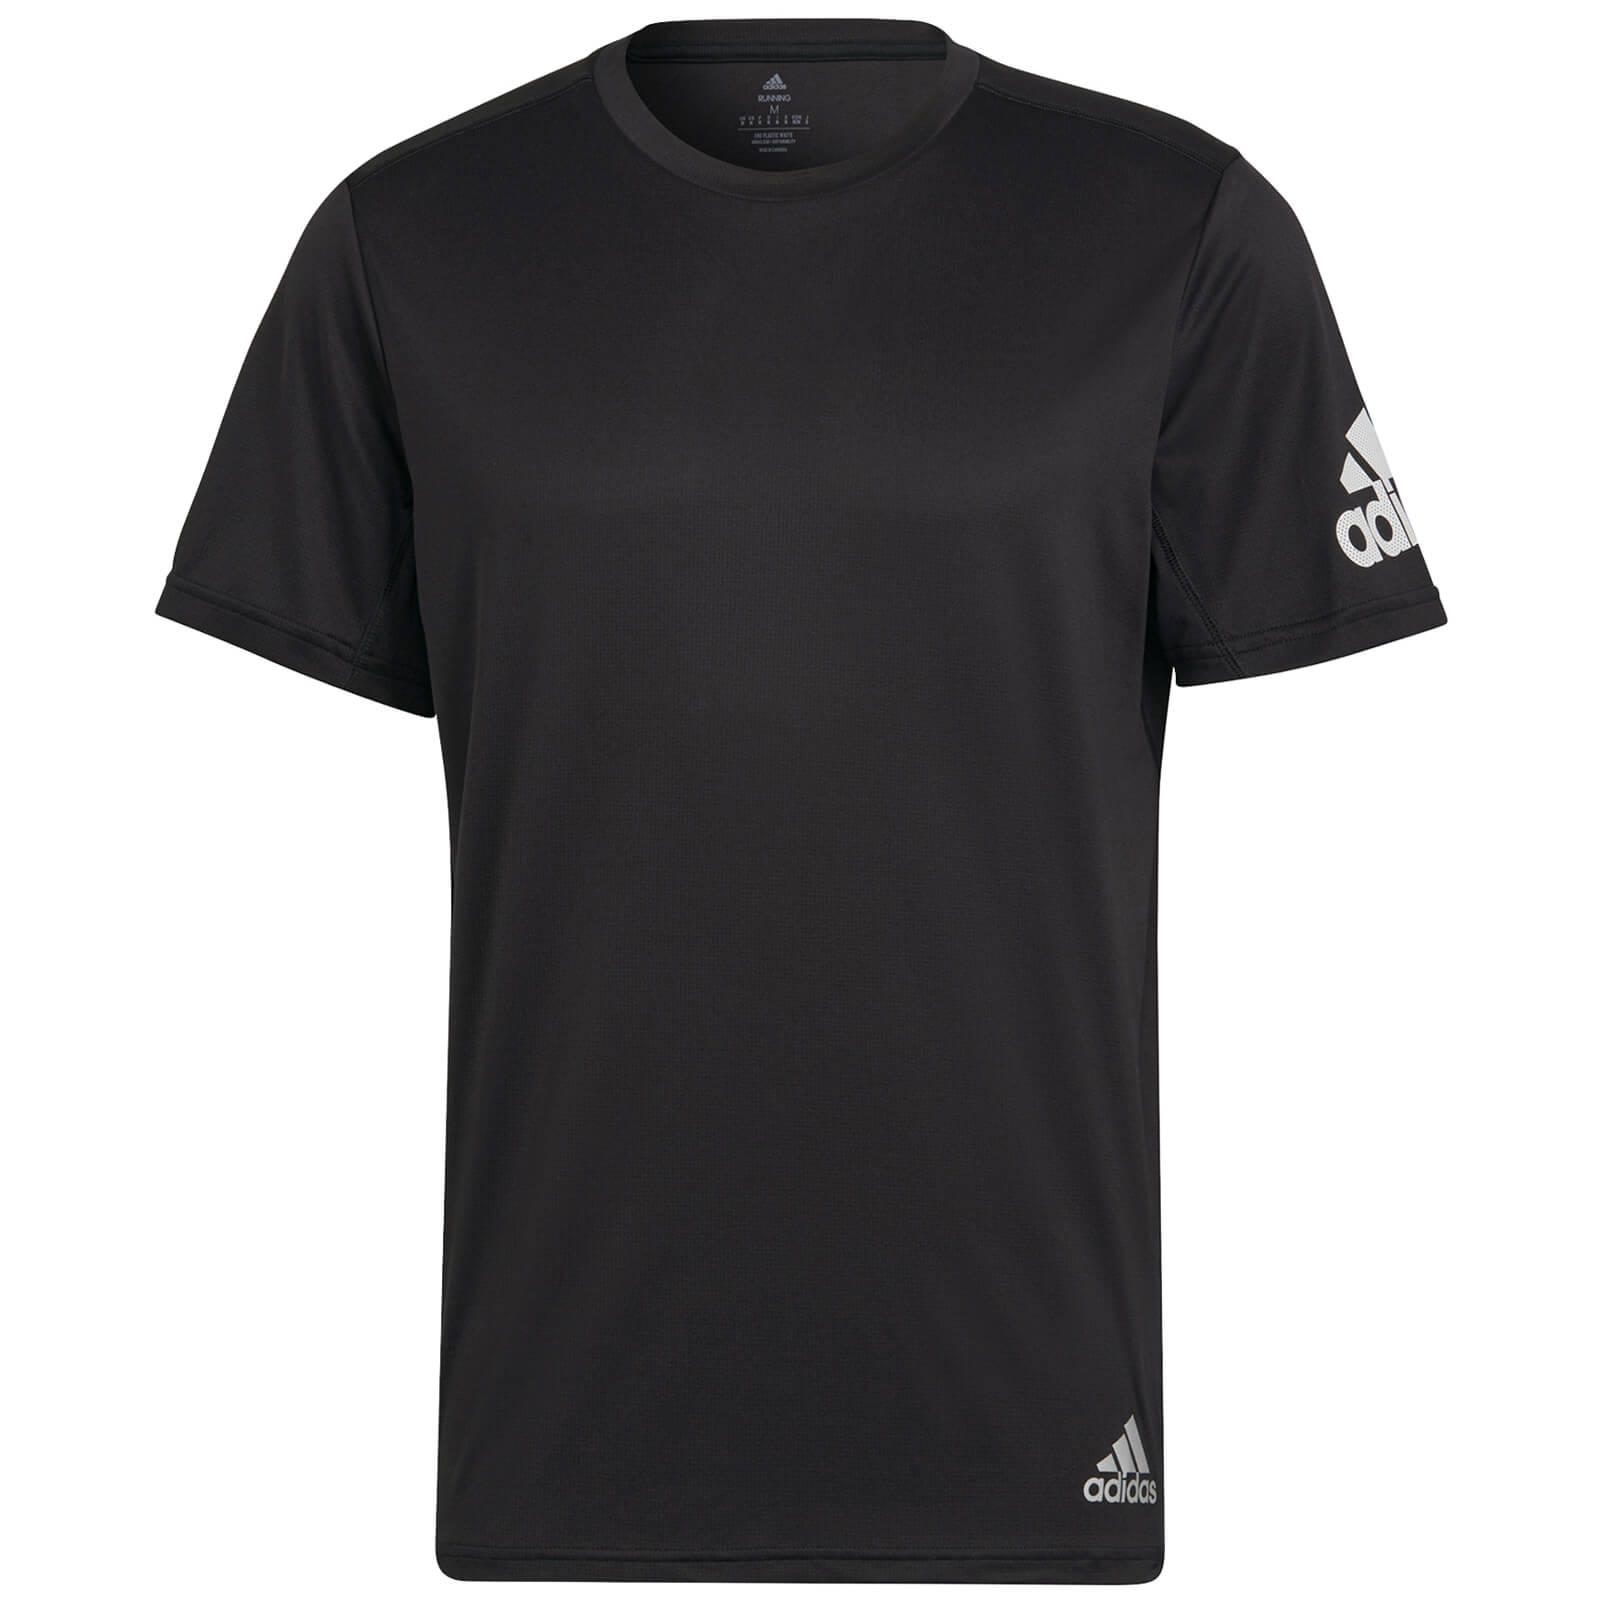 Adidas Run It T-Shirt - Black - L